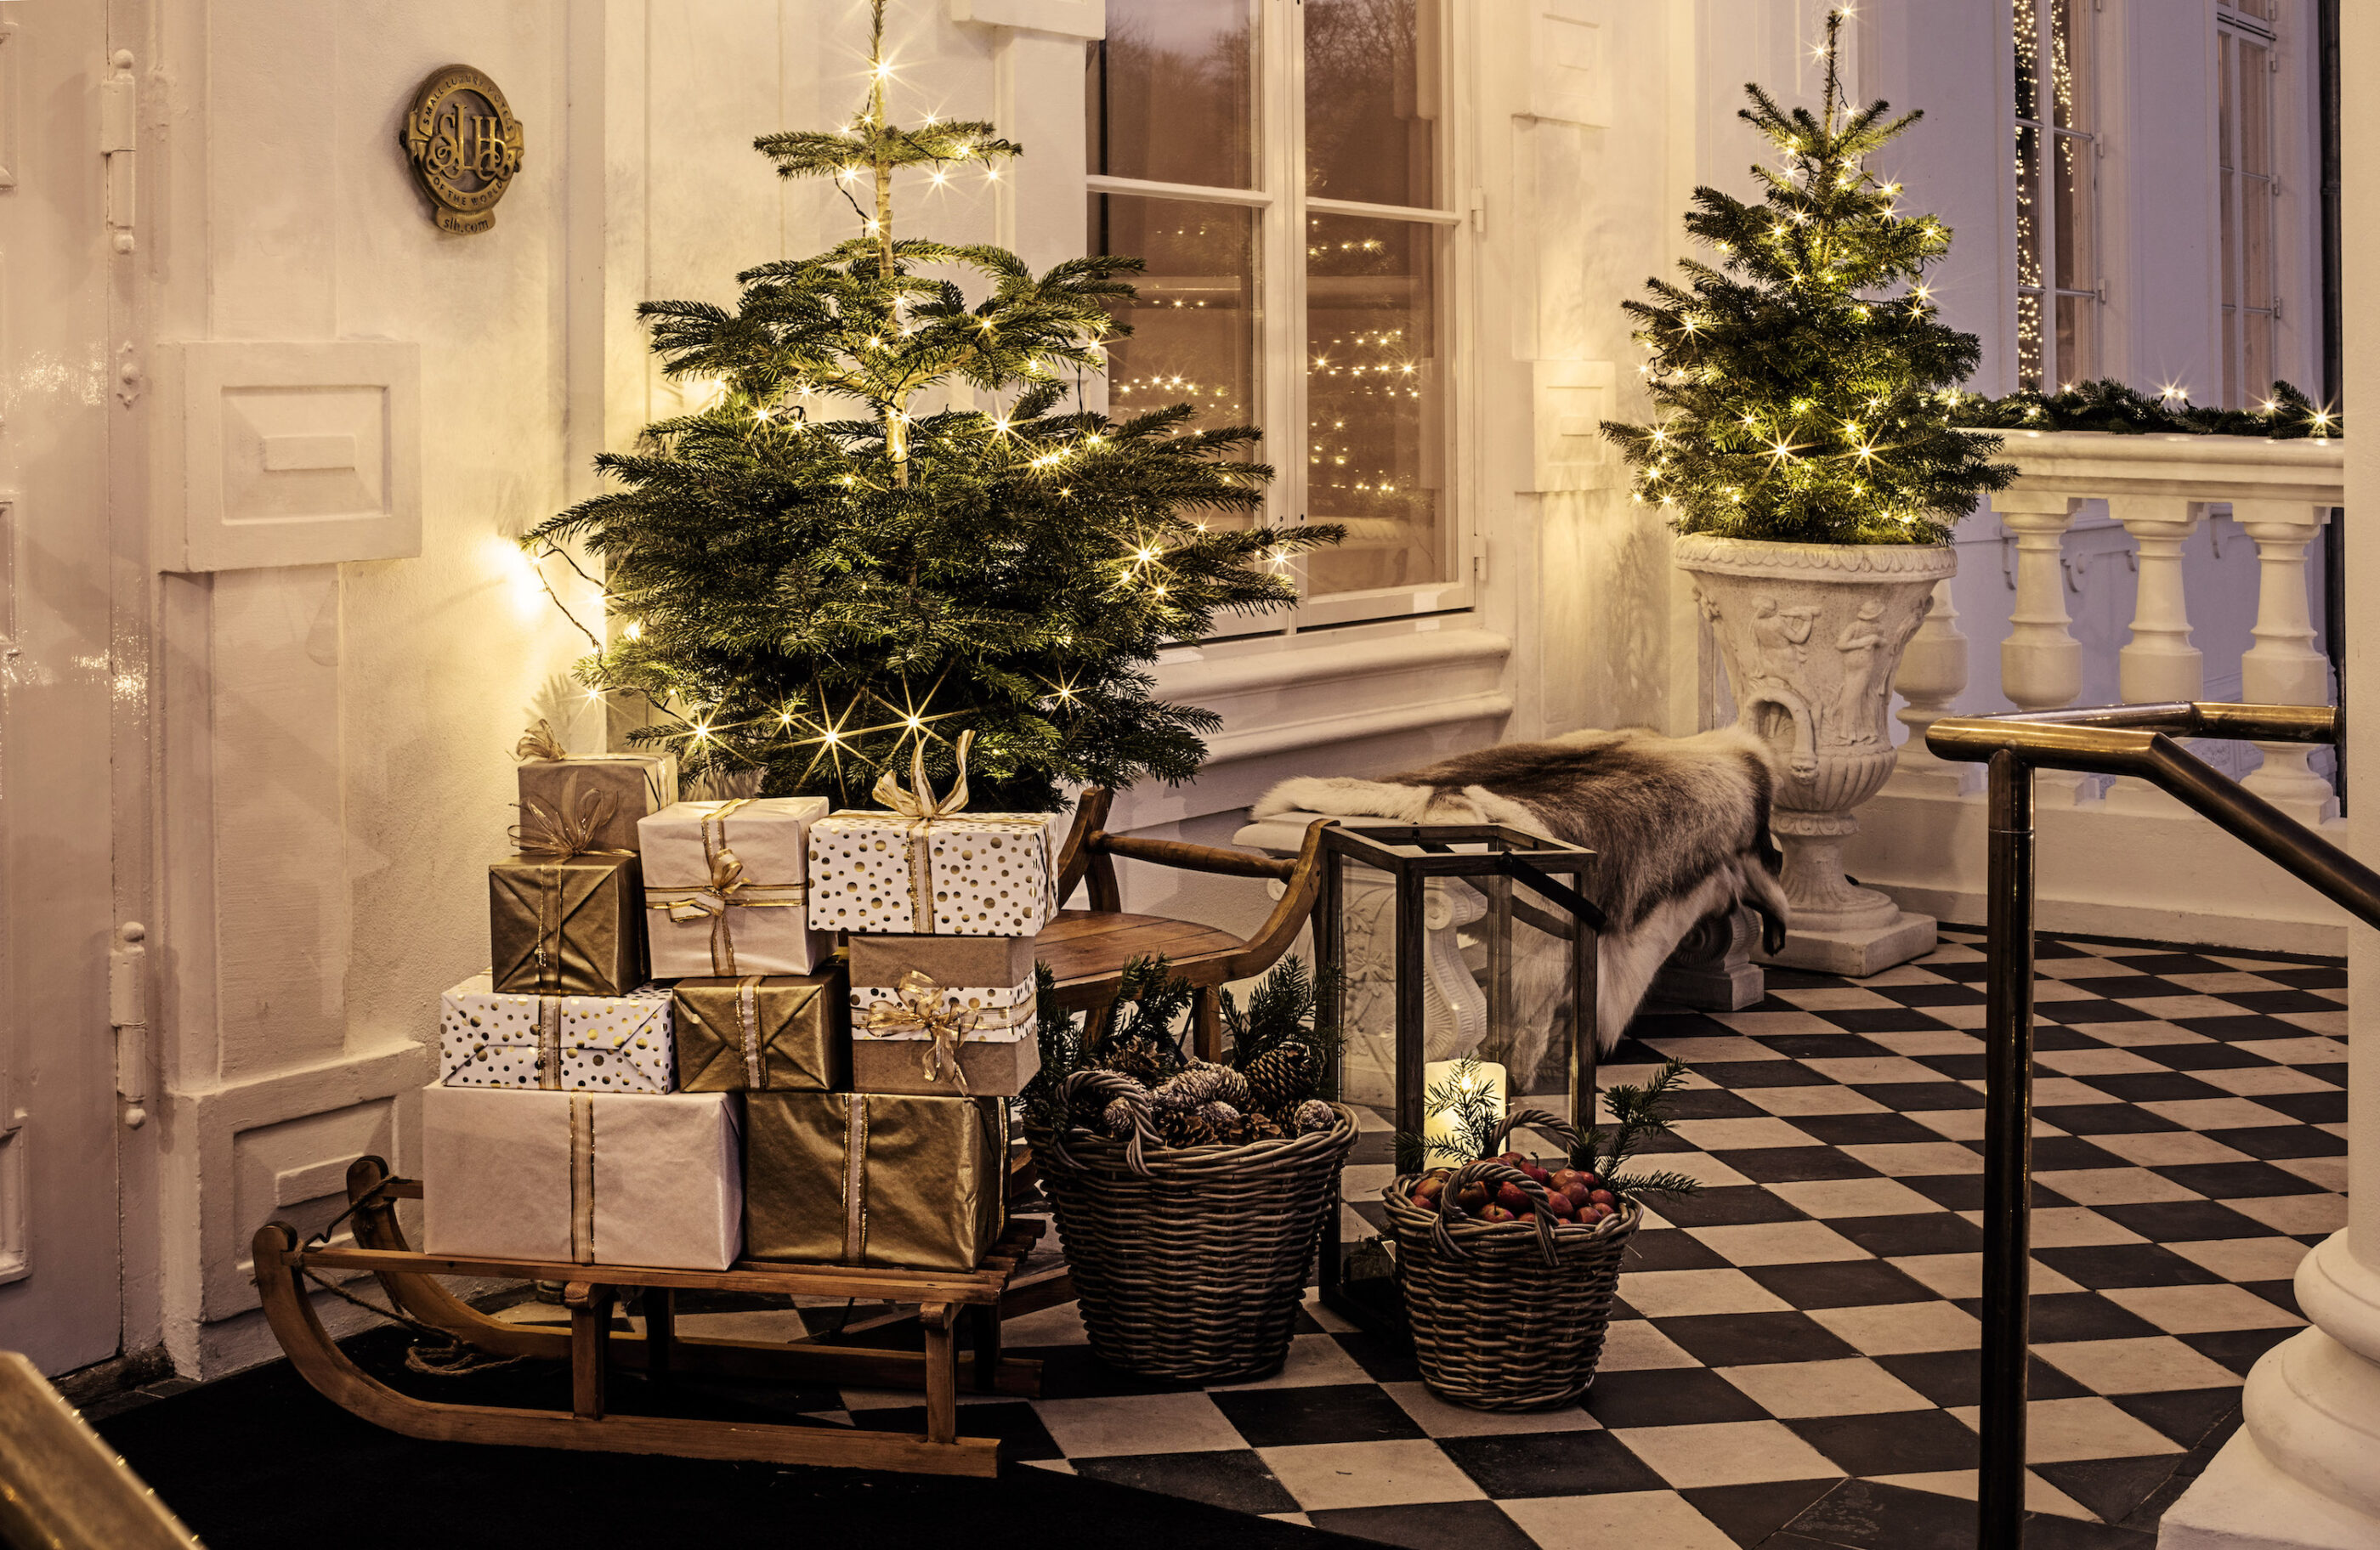 Ved indgangen af hotellet nær trapperne ligger en masse gaver i luksuriøst indpakning belyst af flot juledekoration